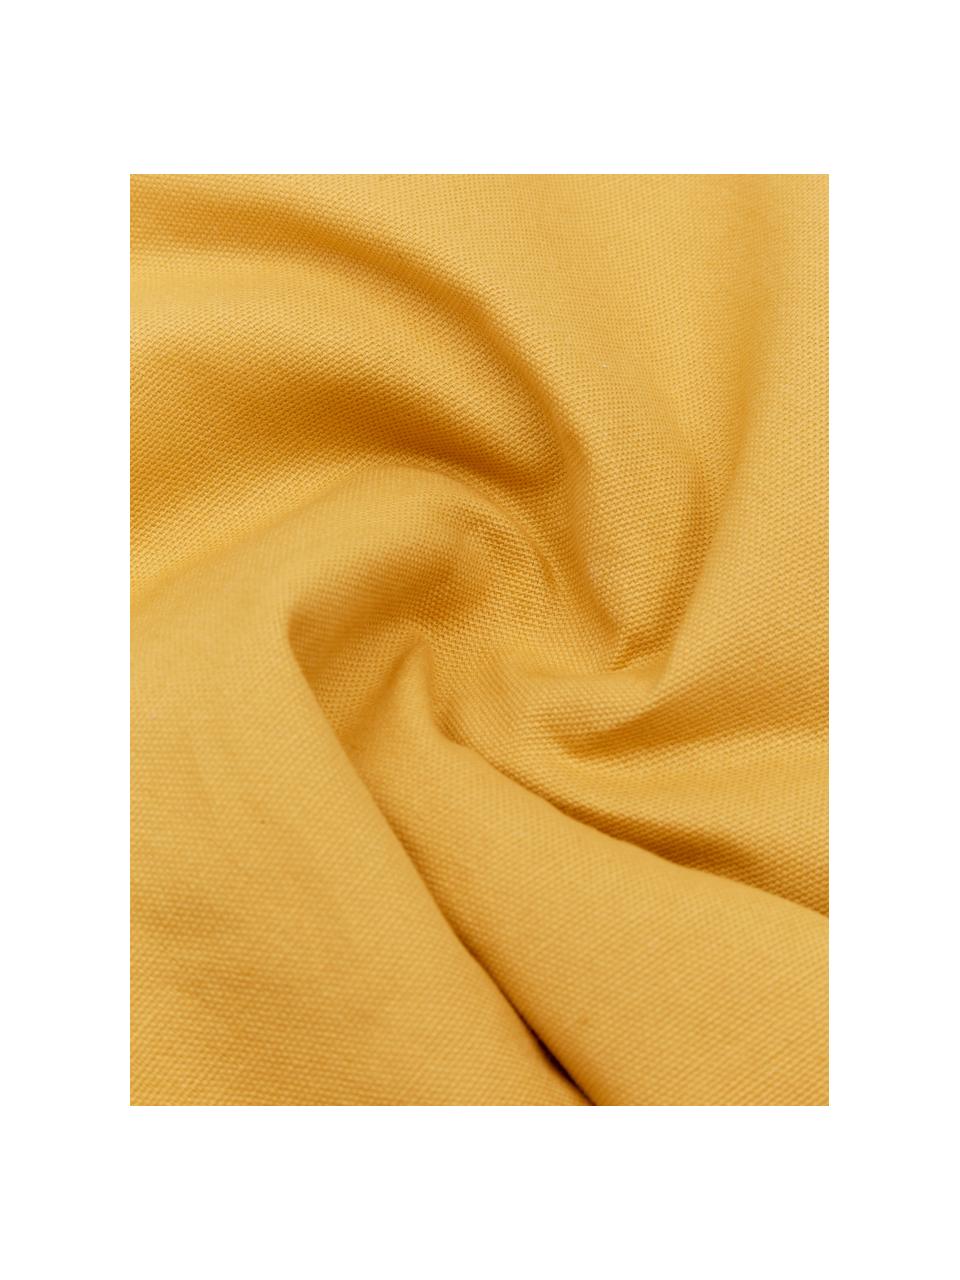 Katoenen kussenhoes Ilari met hoog-laag structuur, 100% katoen, Geel, B 45 x L 45 cm